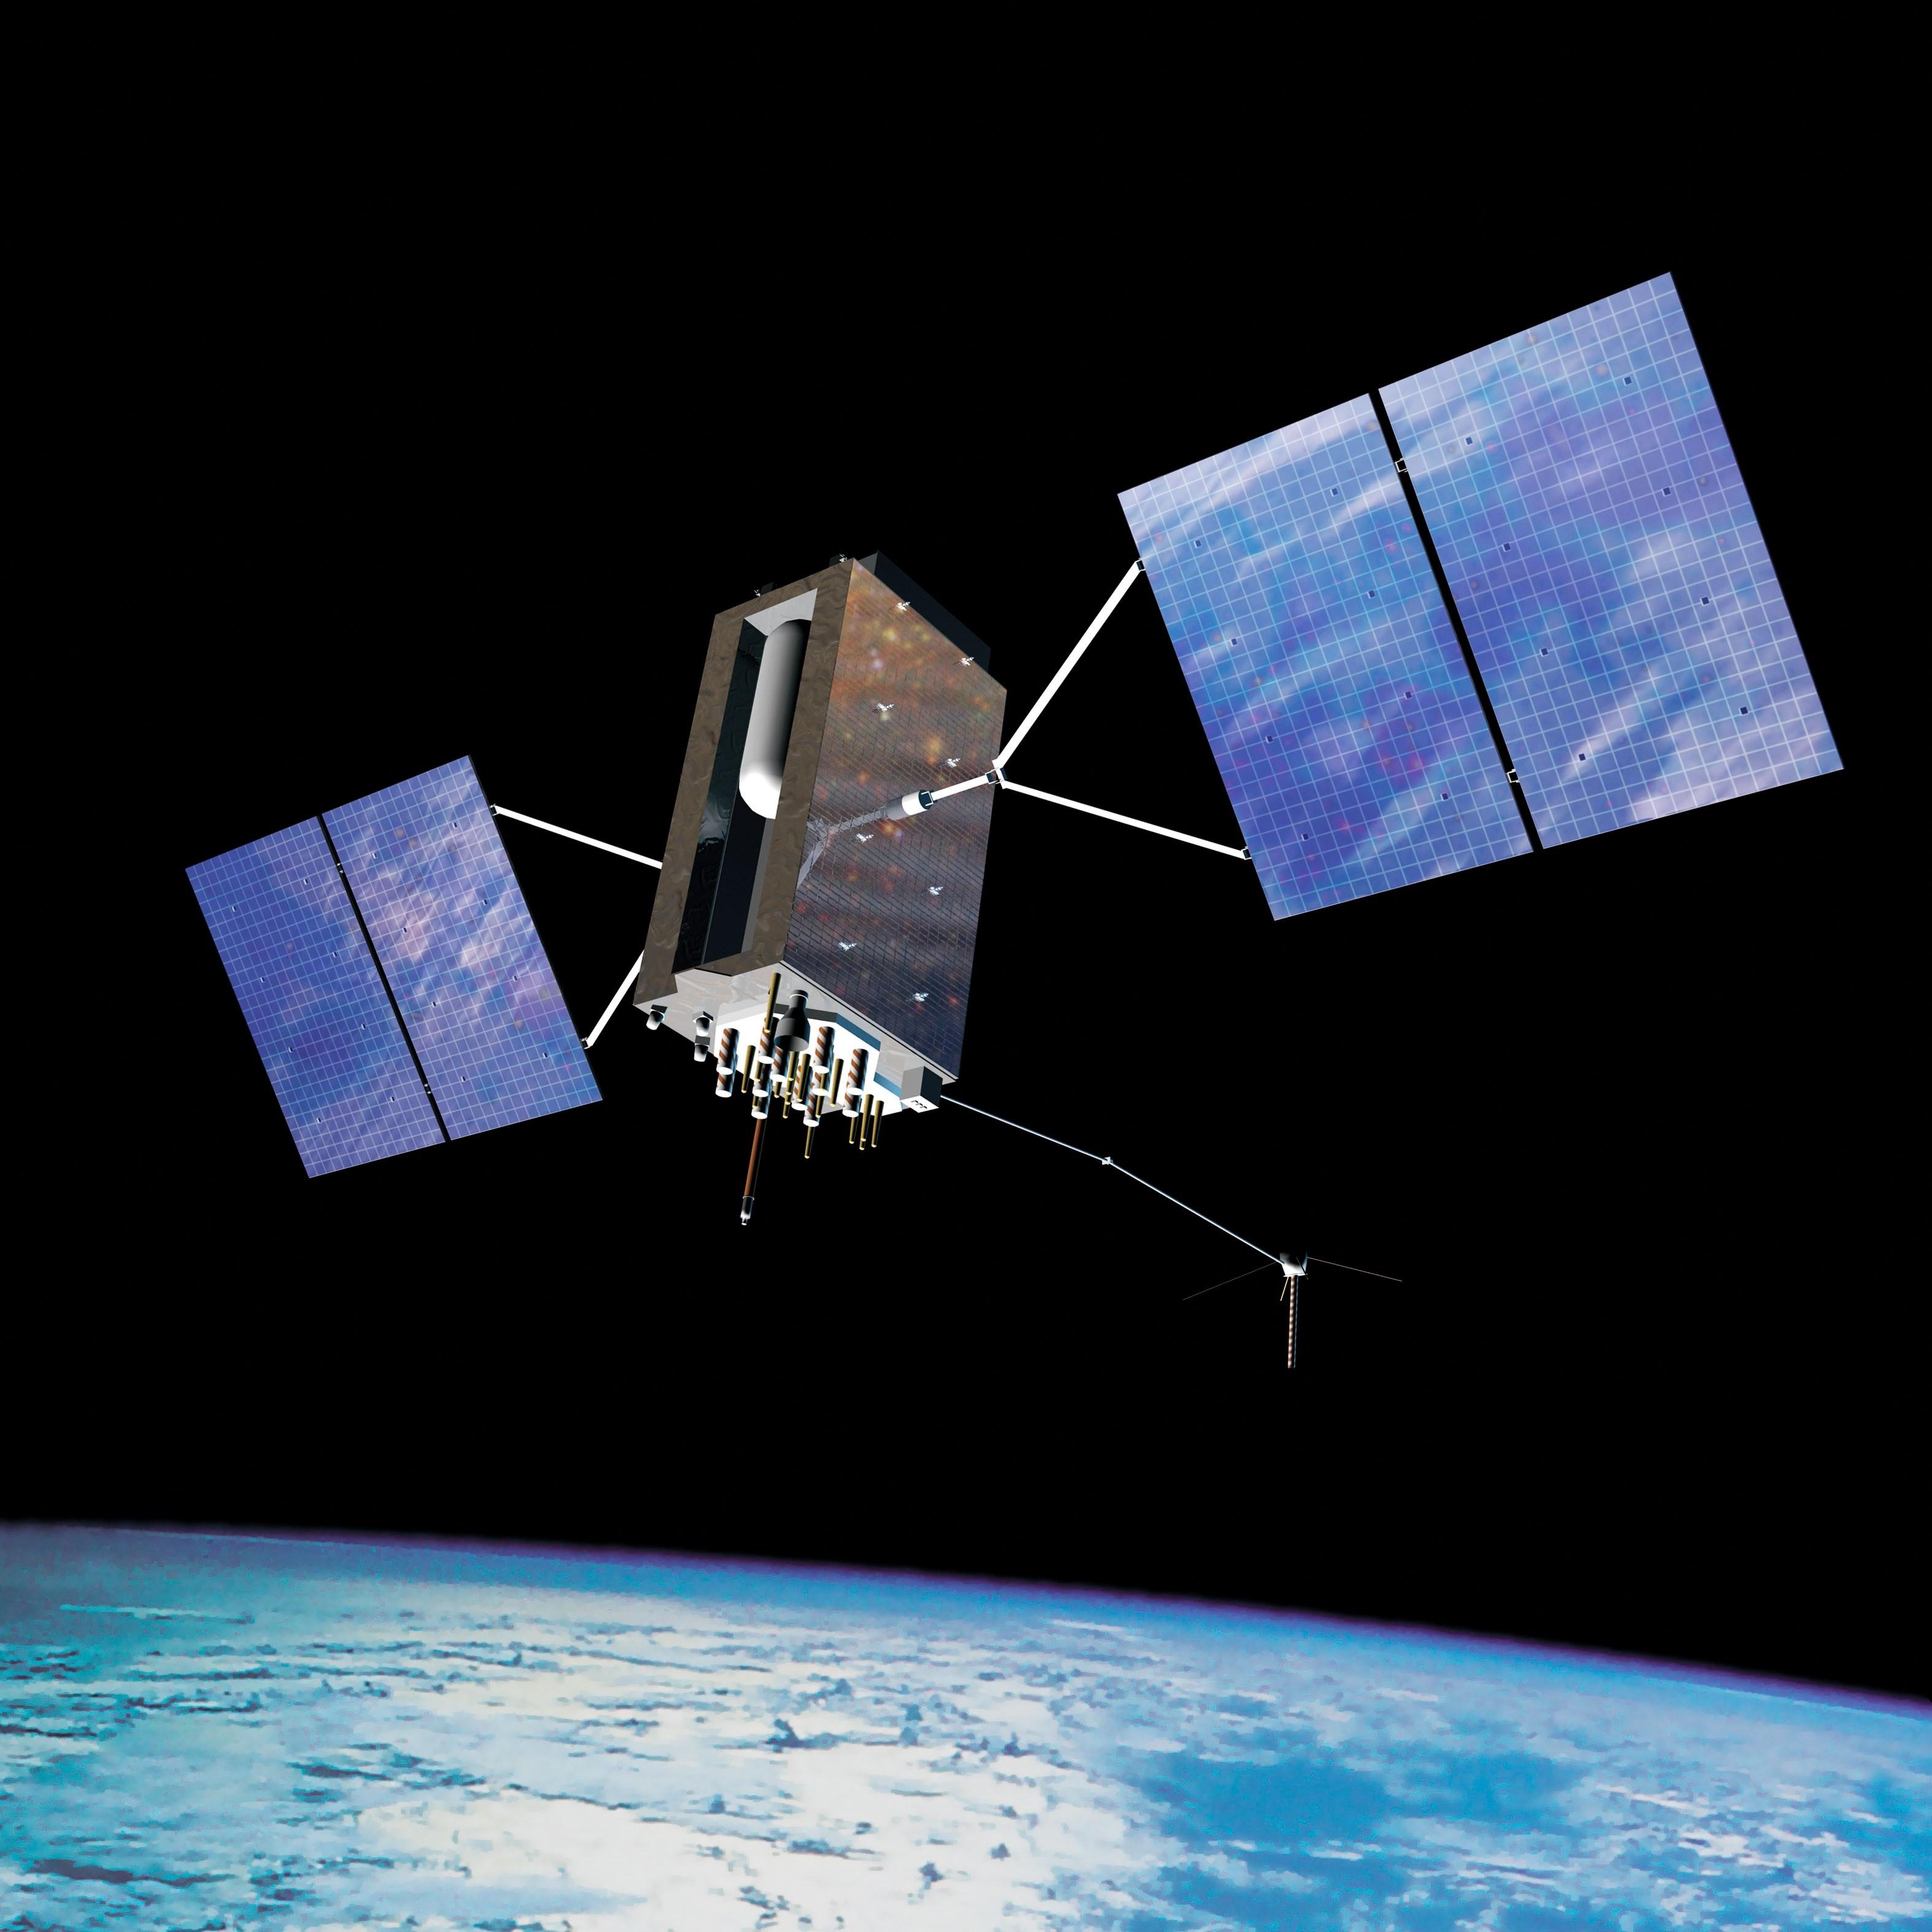 美空军将于2018年12月15日发射第一颗GPSIII军用卫星